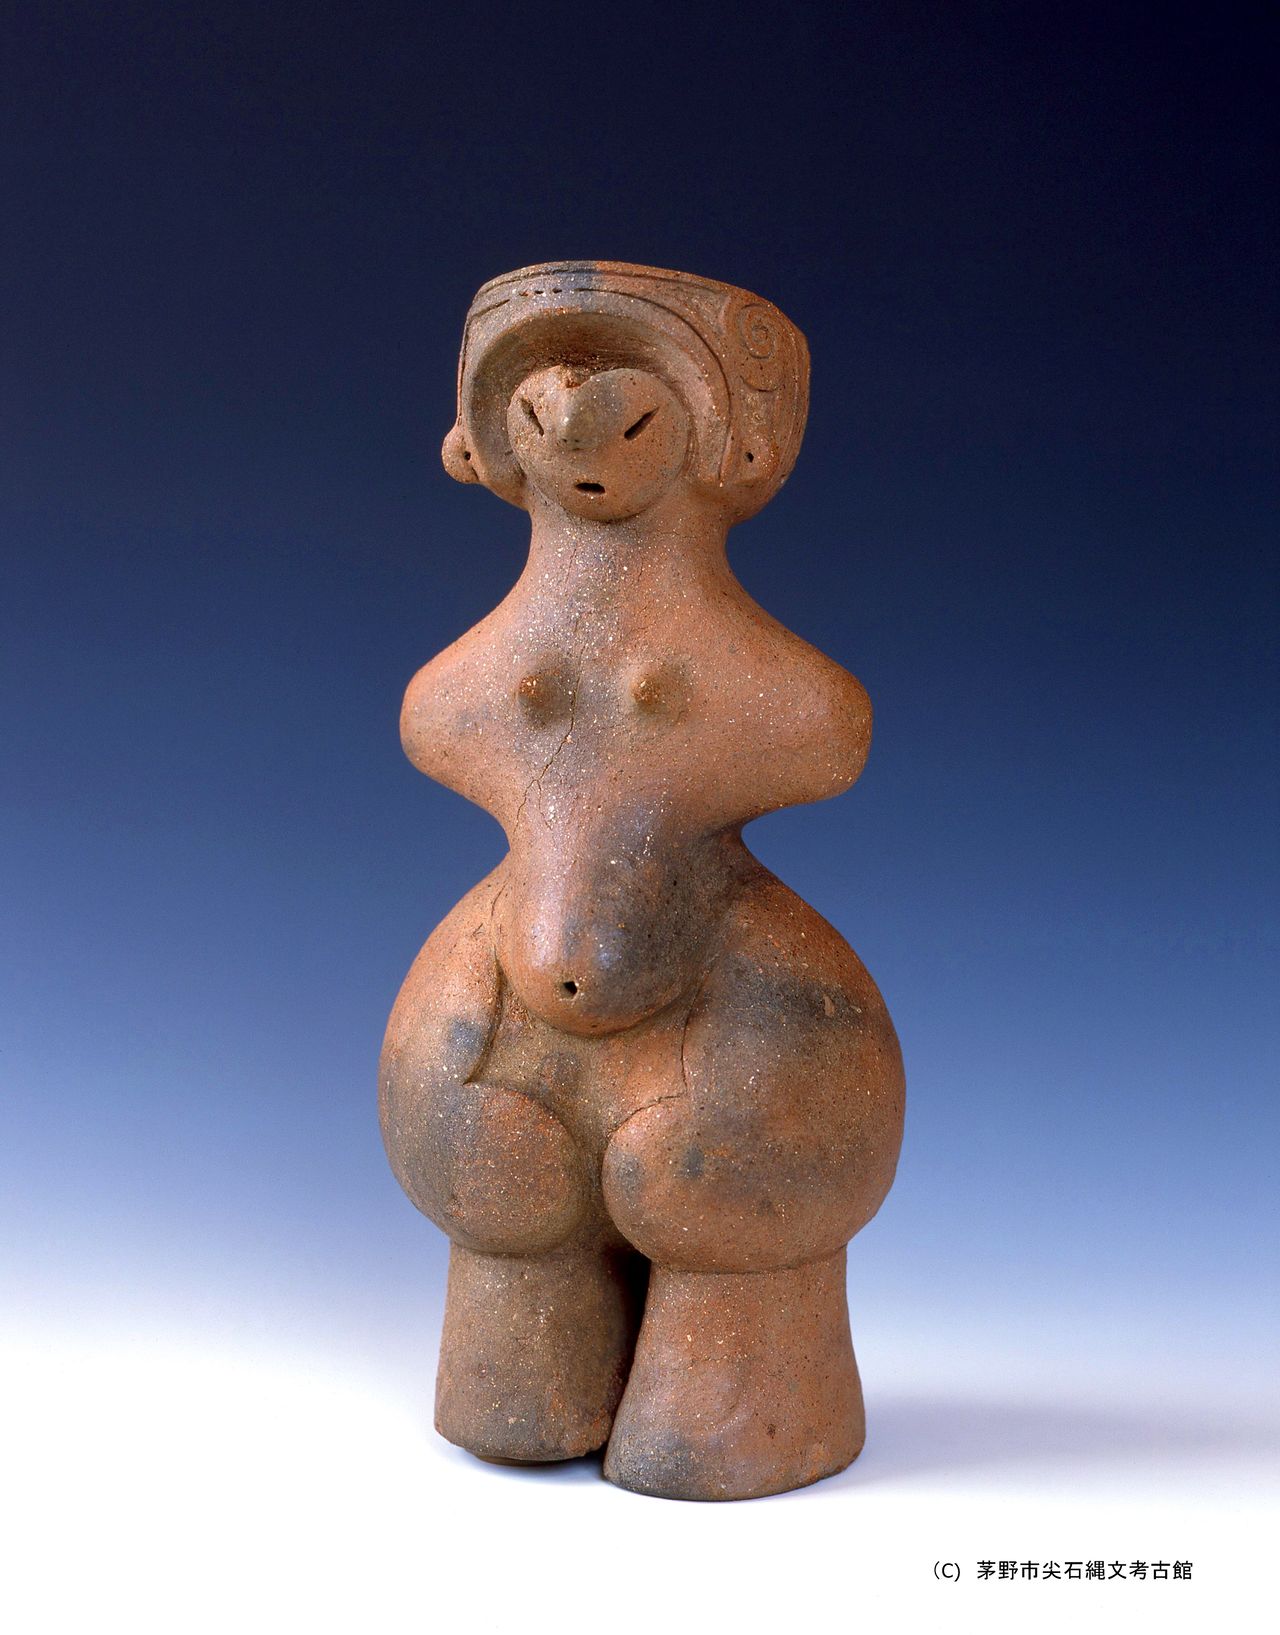 Фигурка догу, изображающая беременную женщину с исторического памятника Танабатакэ в преф. Нагано, Национальное достояние (предоставлено Археологическим музеем Тогарииси г. Тино)